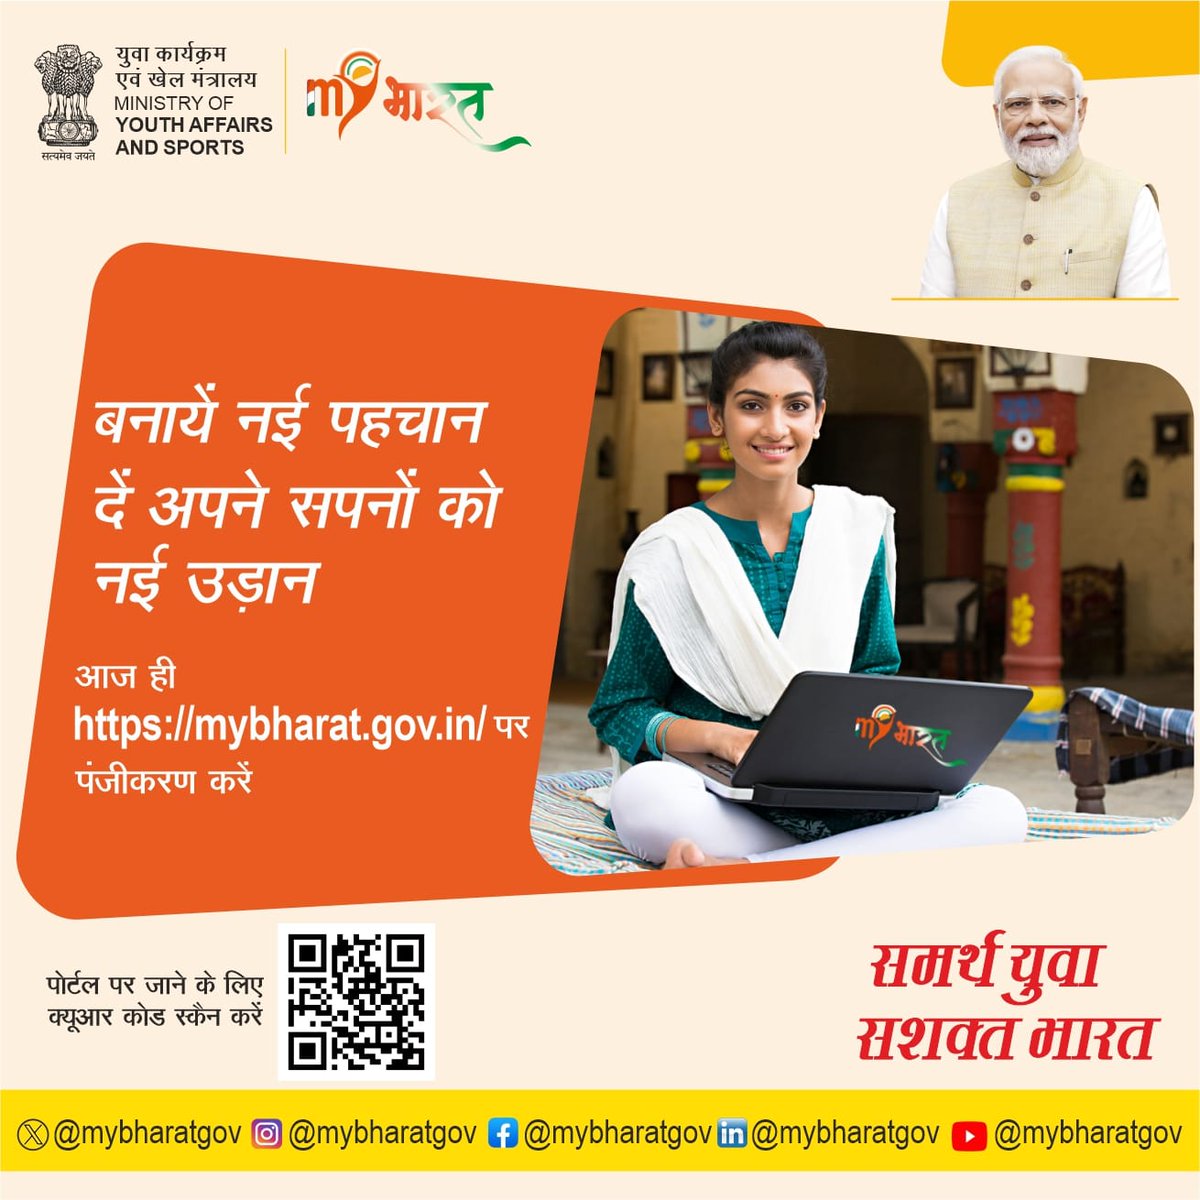 भारत सरकार द्वारा स्थापित किया गया एक ऐसा प्लेटफार्म जो युवाओं के सपनों को नई उड़ान देगा। #MYBharat आज ही mybharat.gov.in पर पंजीकरण करें और स्वयं सेवा से देश का विकास करें।